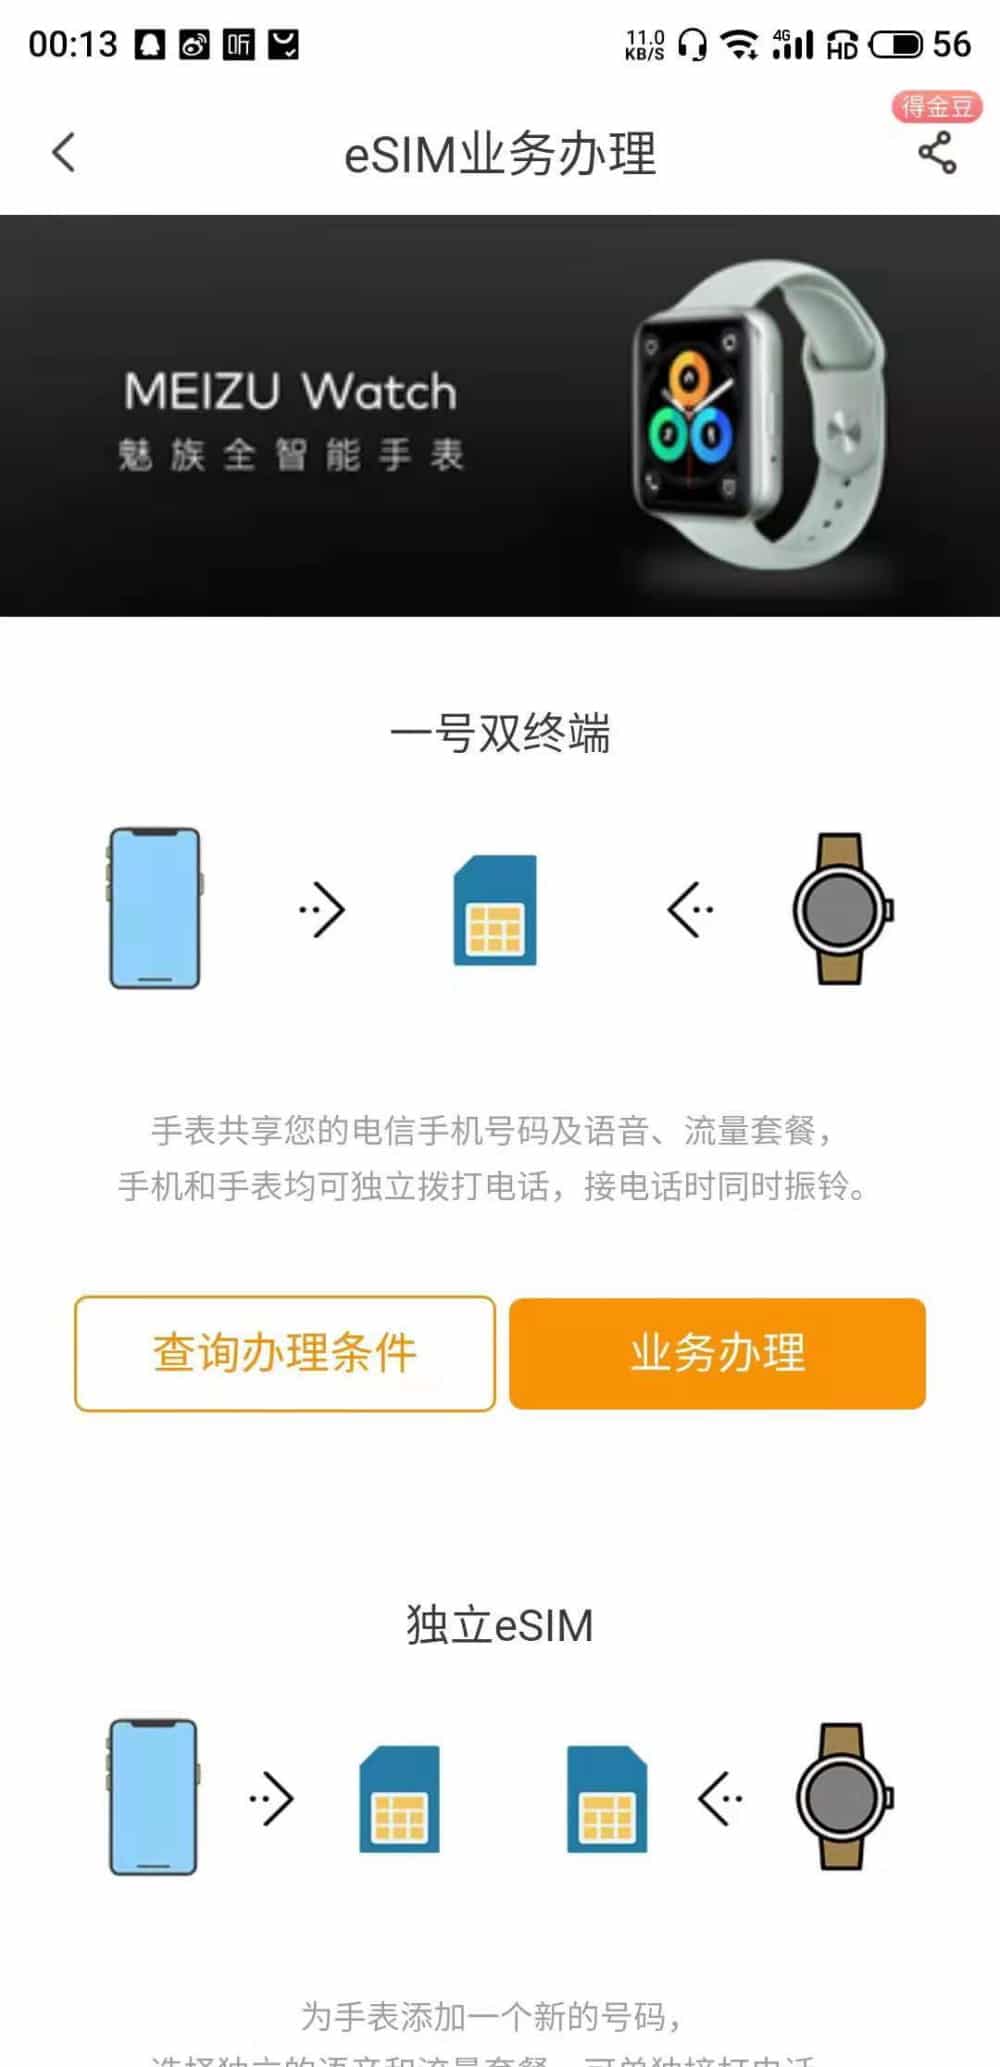 Imagem mostra print sobre o Meizu Watch, retirado do site da China Telecom